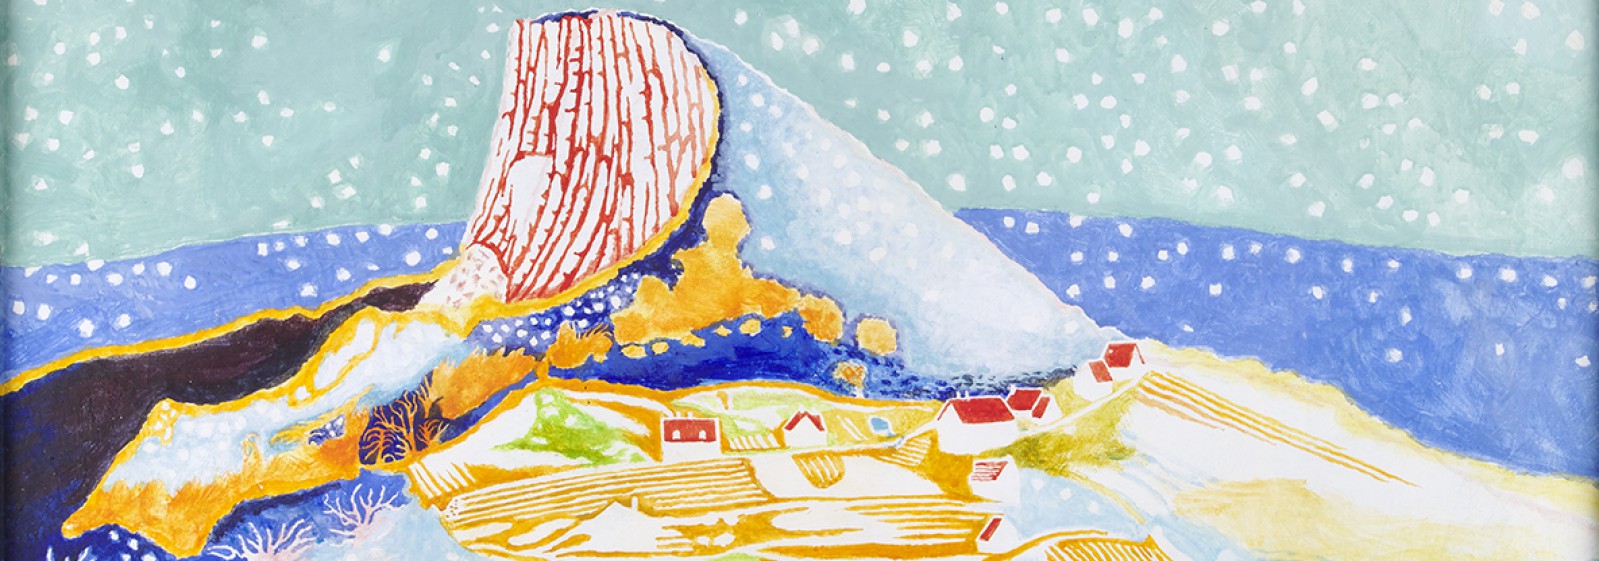 Obraz przedstawiający padający śnieg nad górami, polami i domami, stojącymi w polu. Obraz jest utrzymany w niebiesko-żółto-czerwonej kolorystyce. 